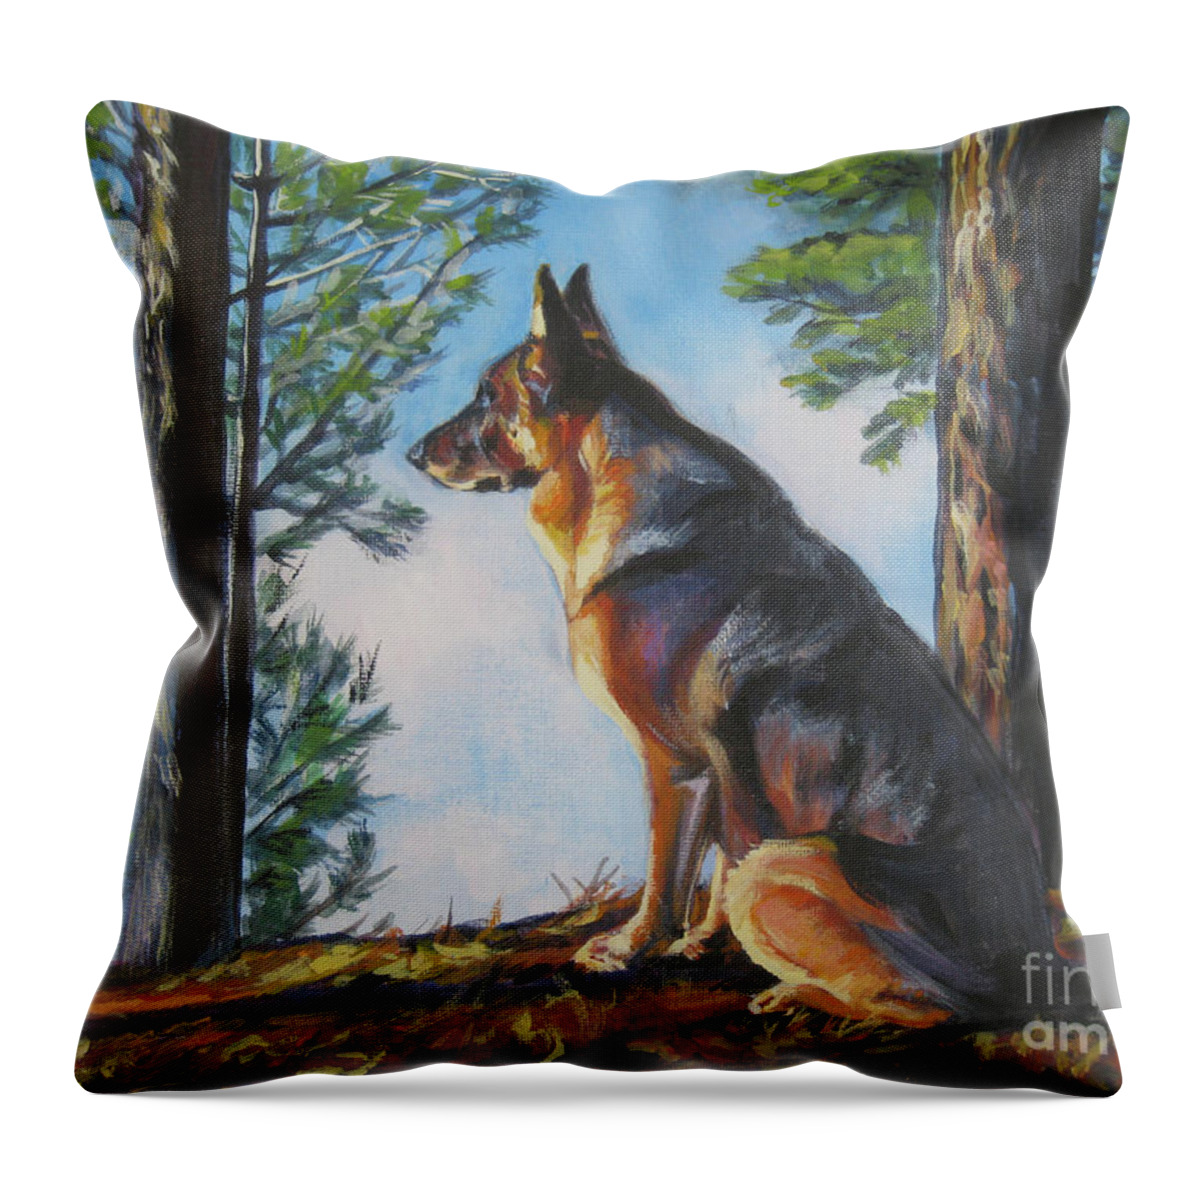 German Shepherd Throw Pillow featuring the painting German Shepherd Lookout by Lee Ann Shepard